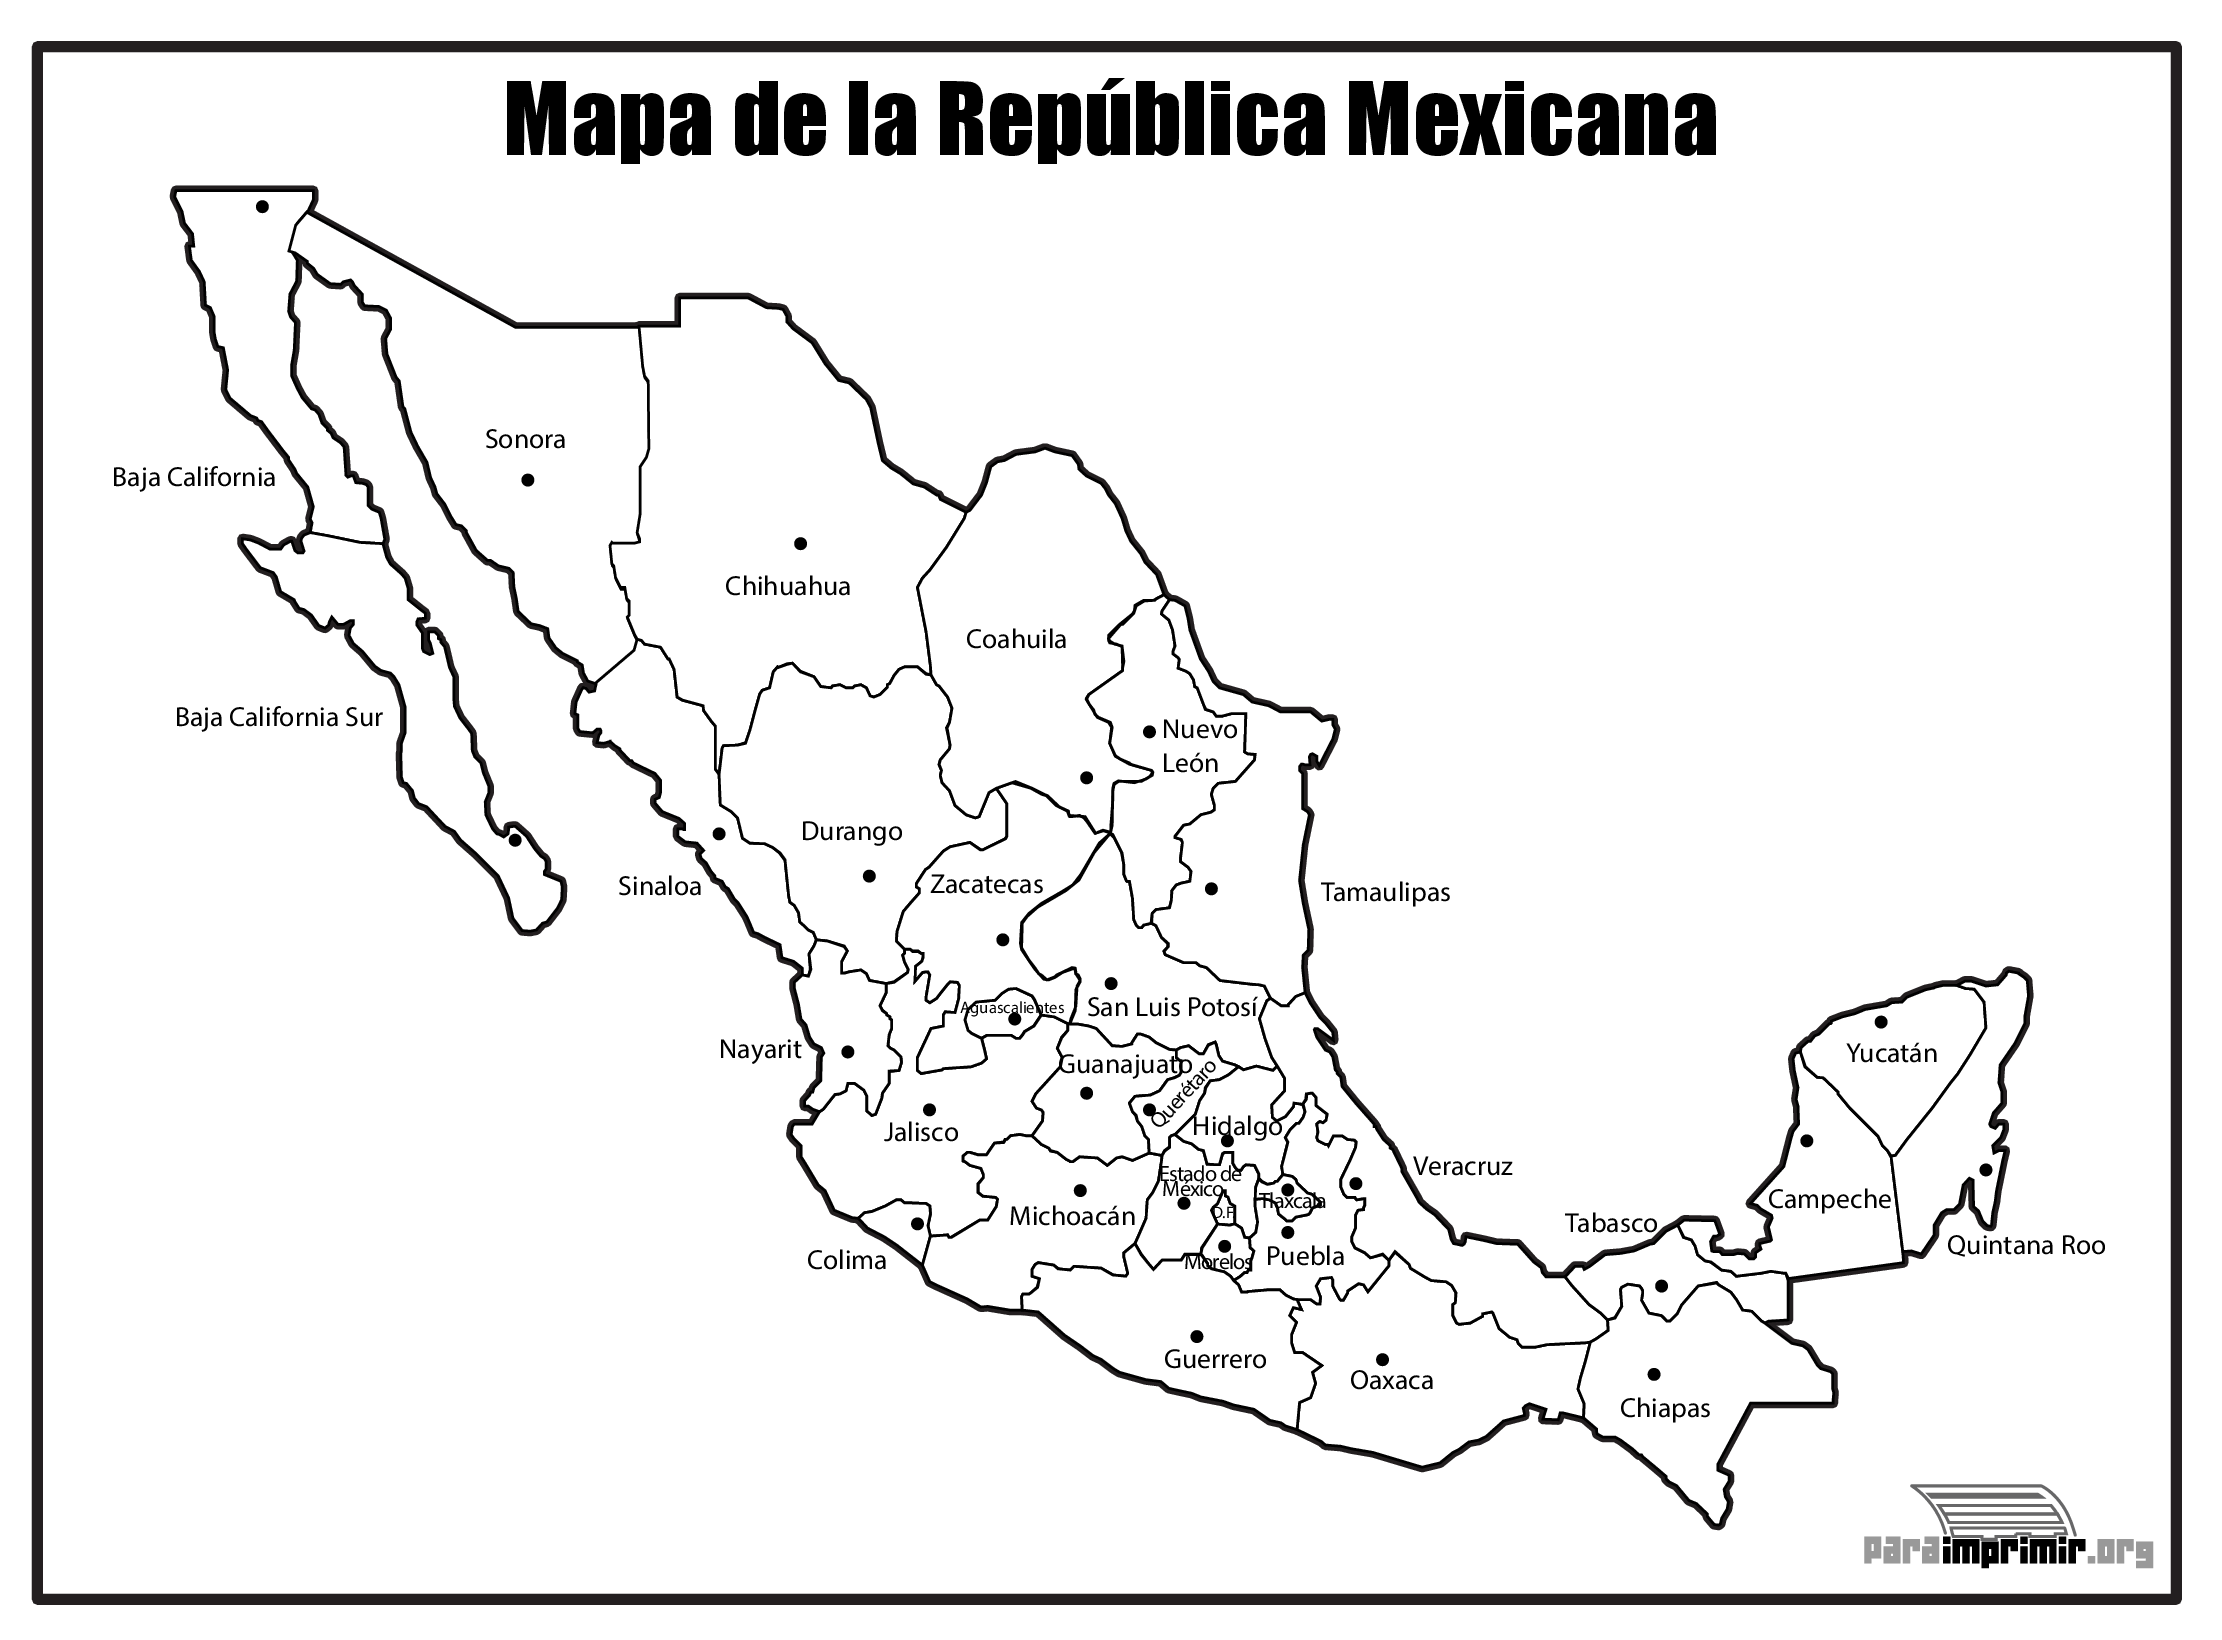 Mapa De La Republica Mexicana Con Nombres Para Imprimir Download Pdf